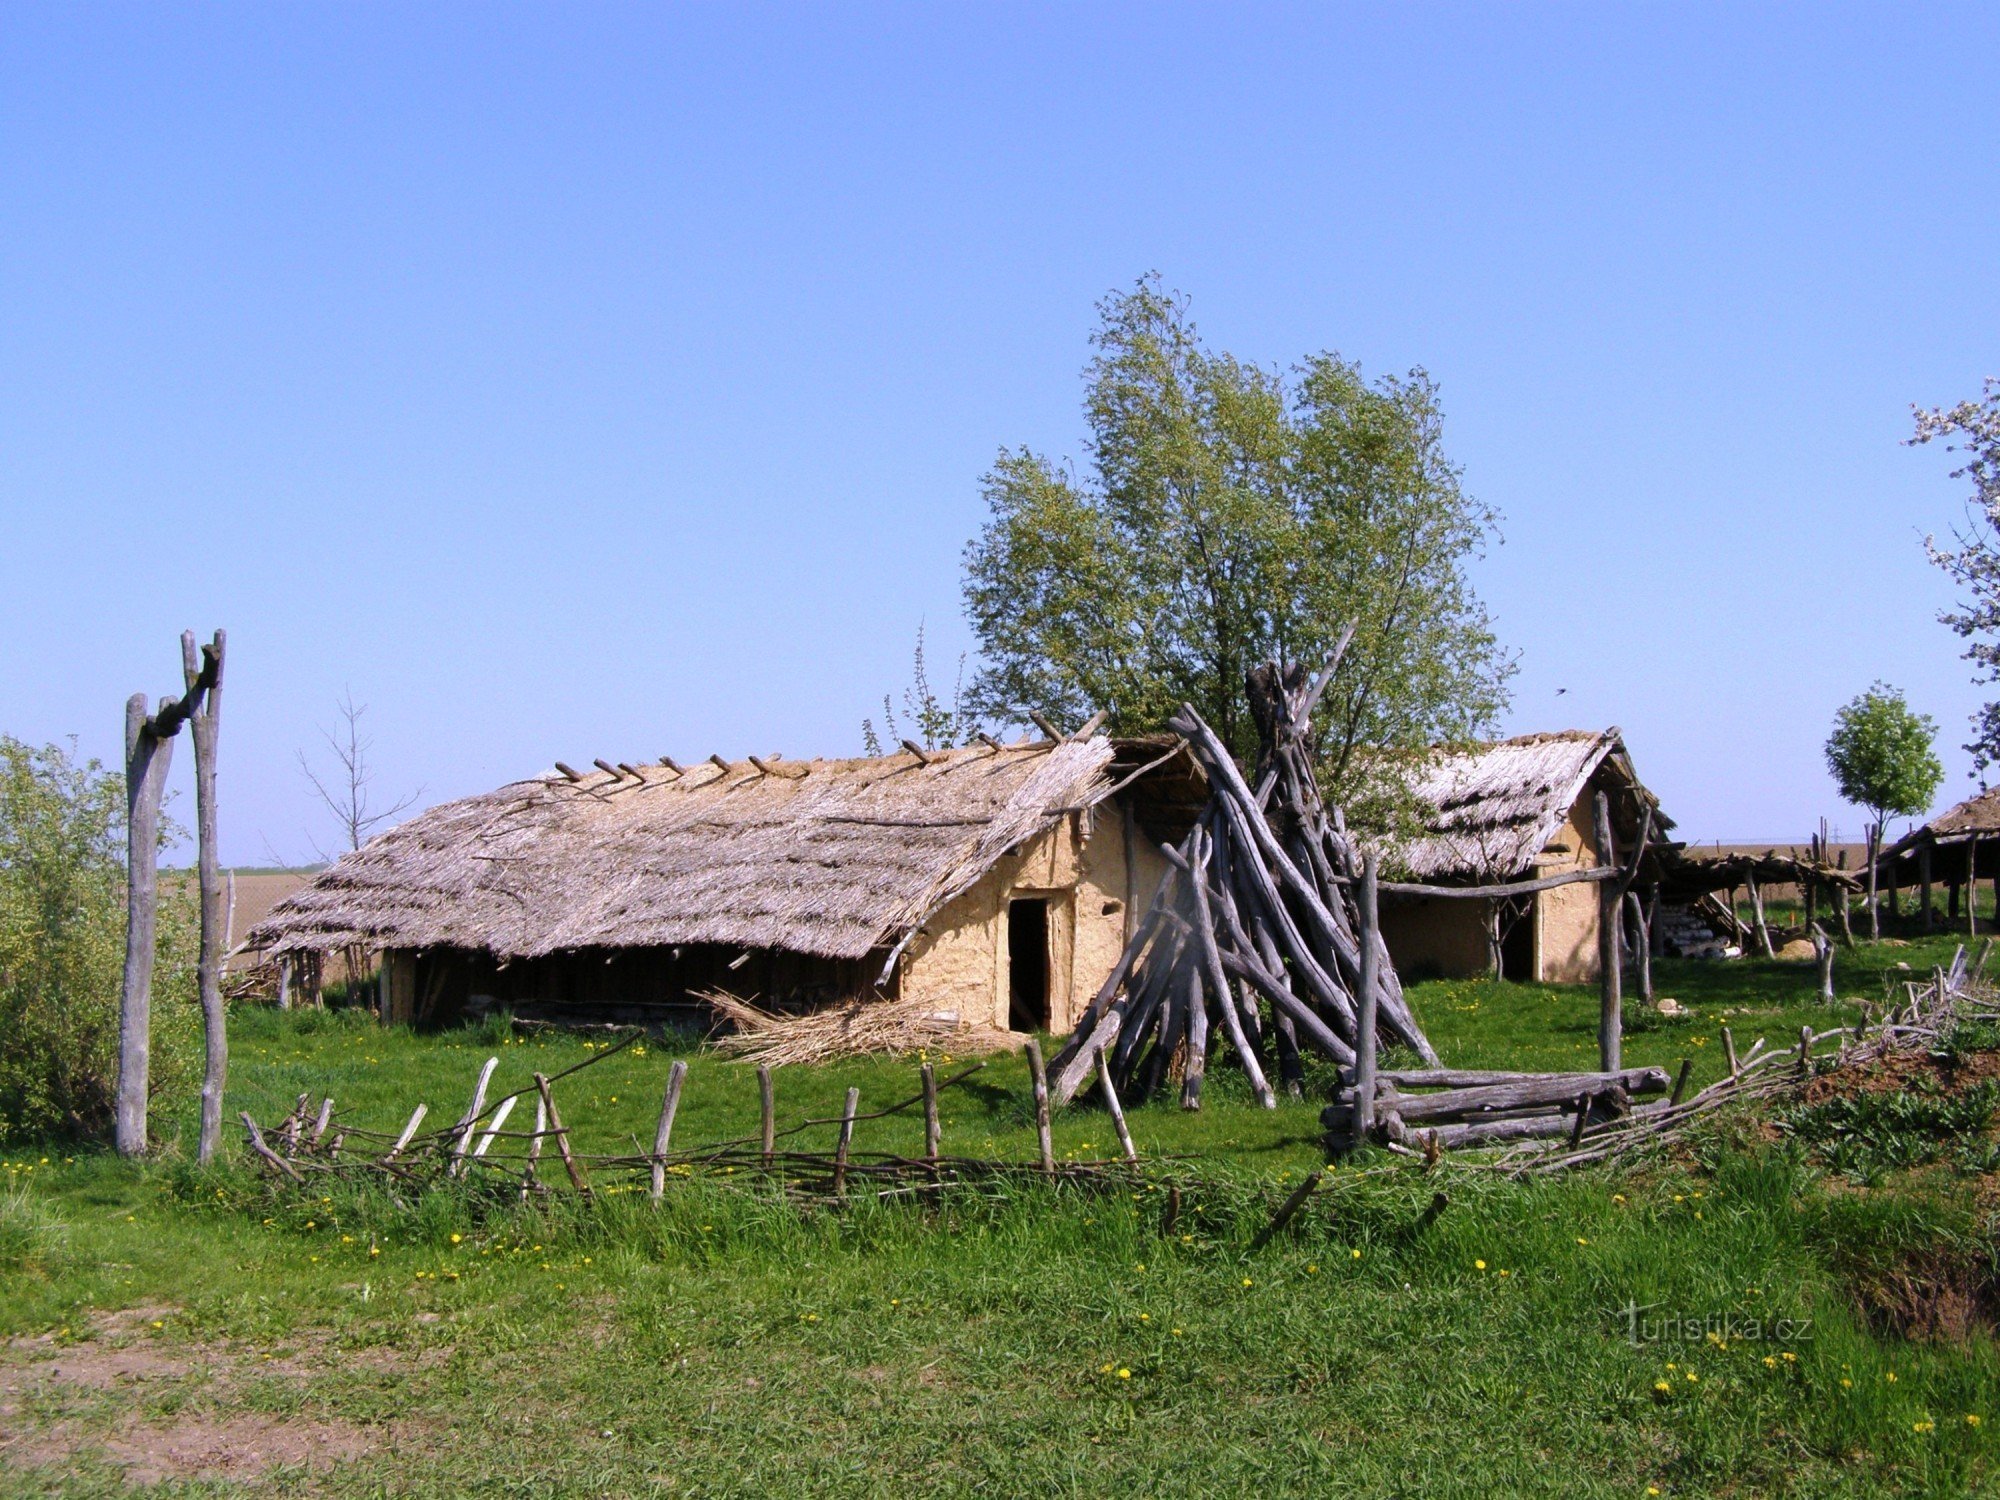 Všestary - Center for Eksperimentel Arkæologi